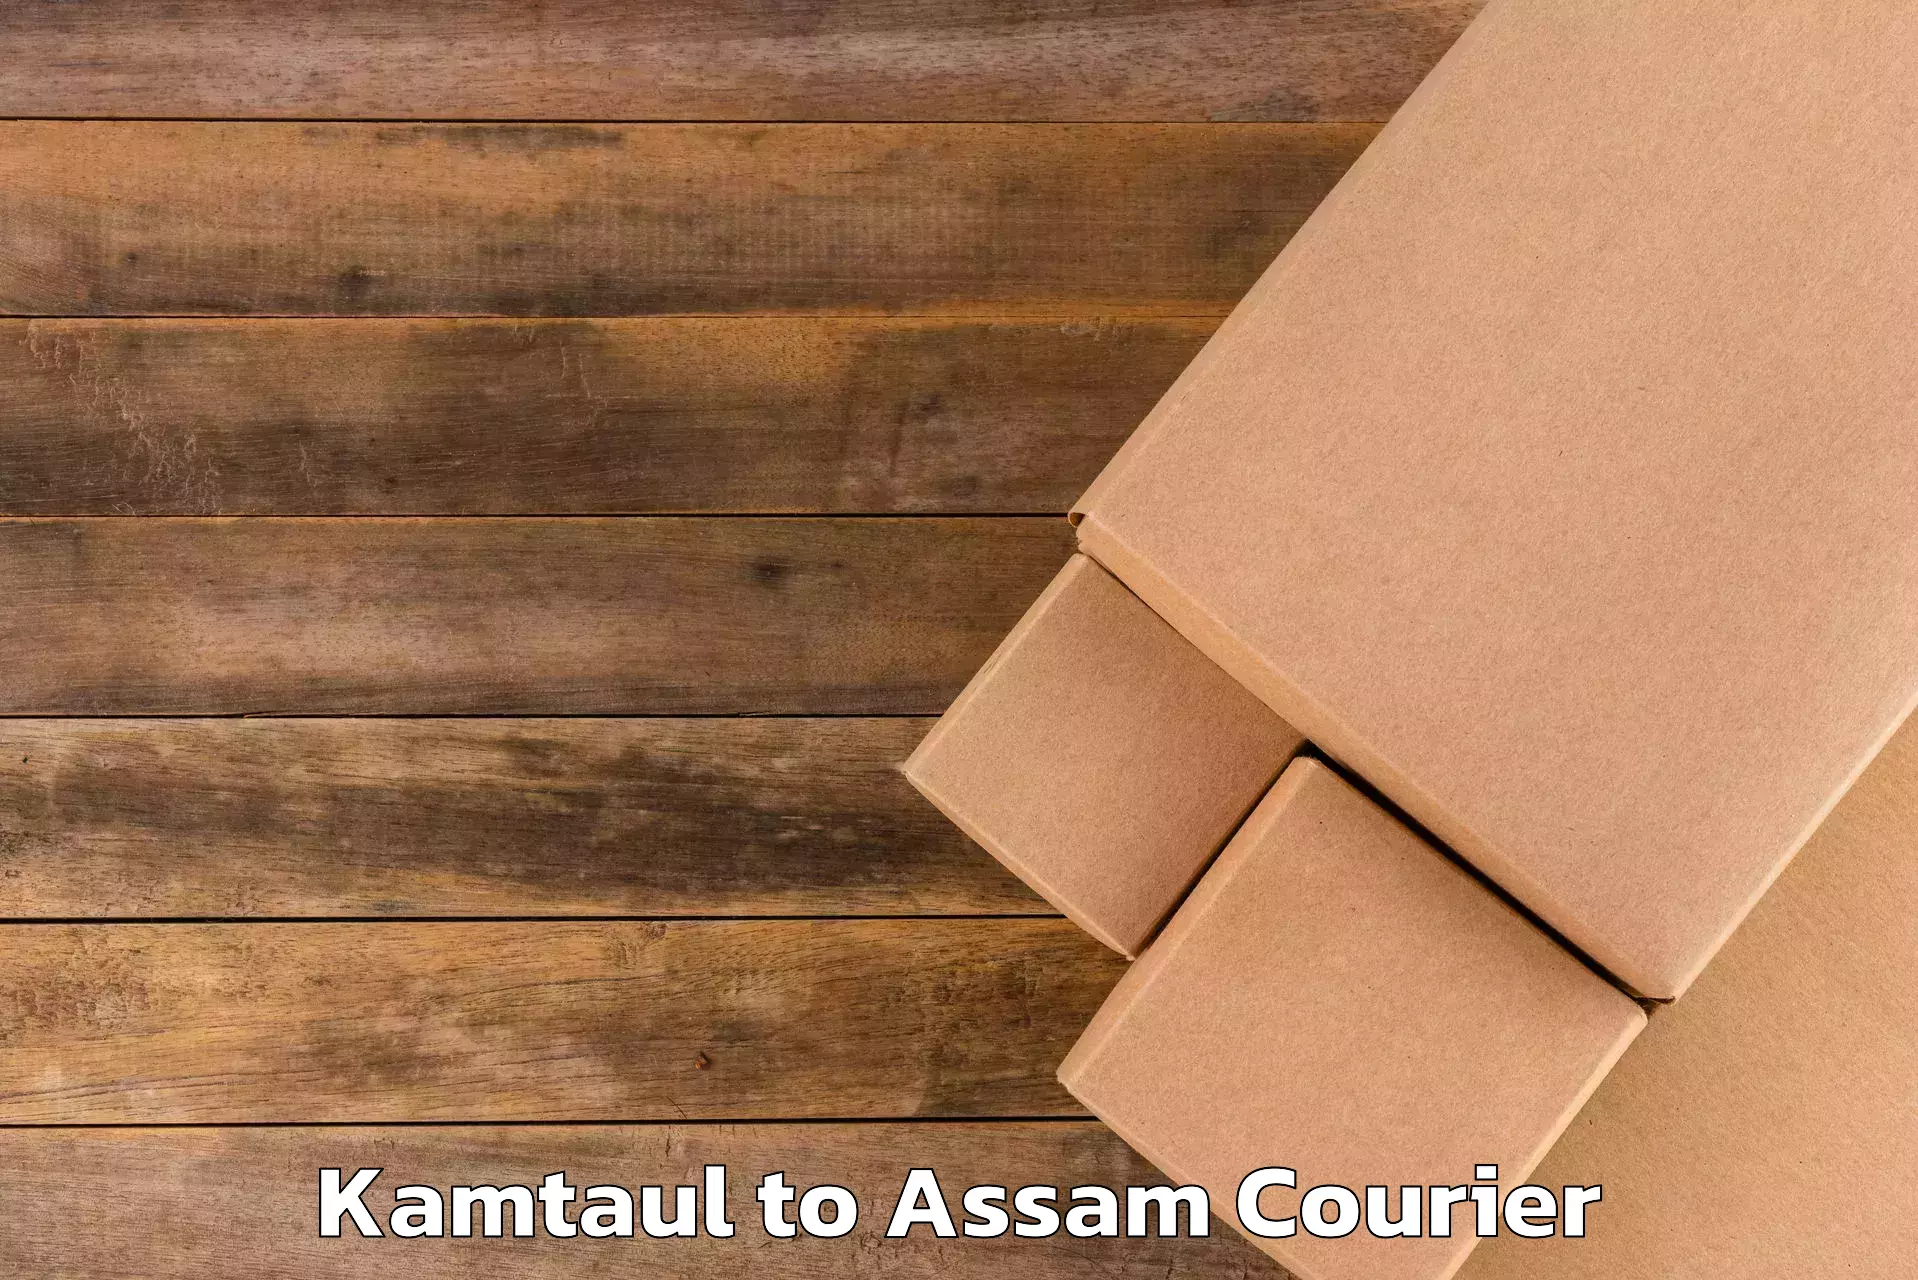 Luggage shipment tracking Kamtaul to Sarupathar